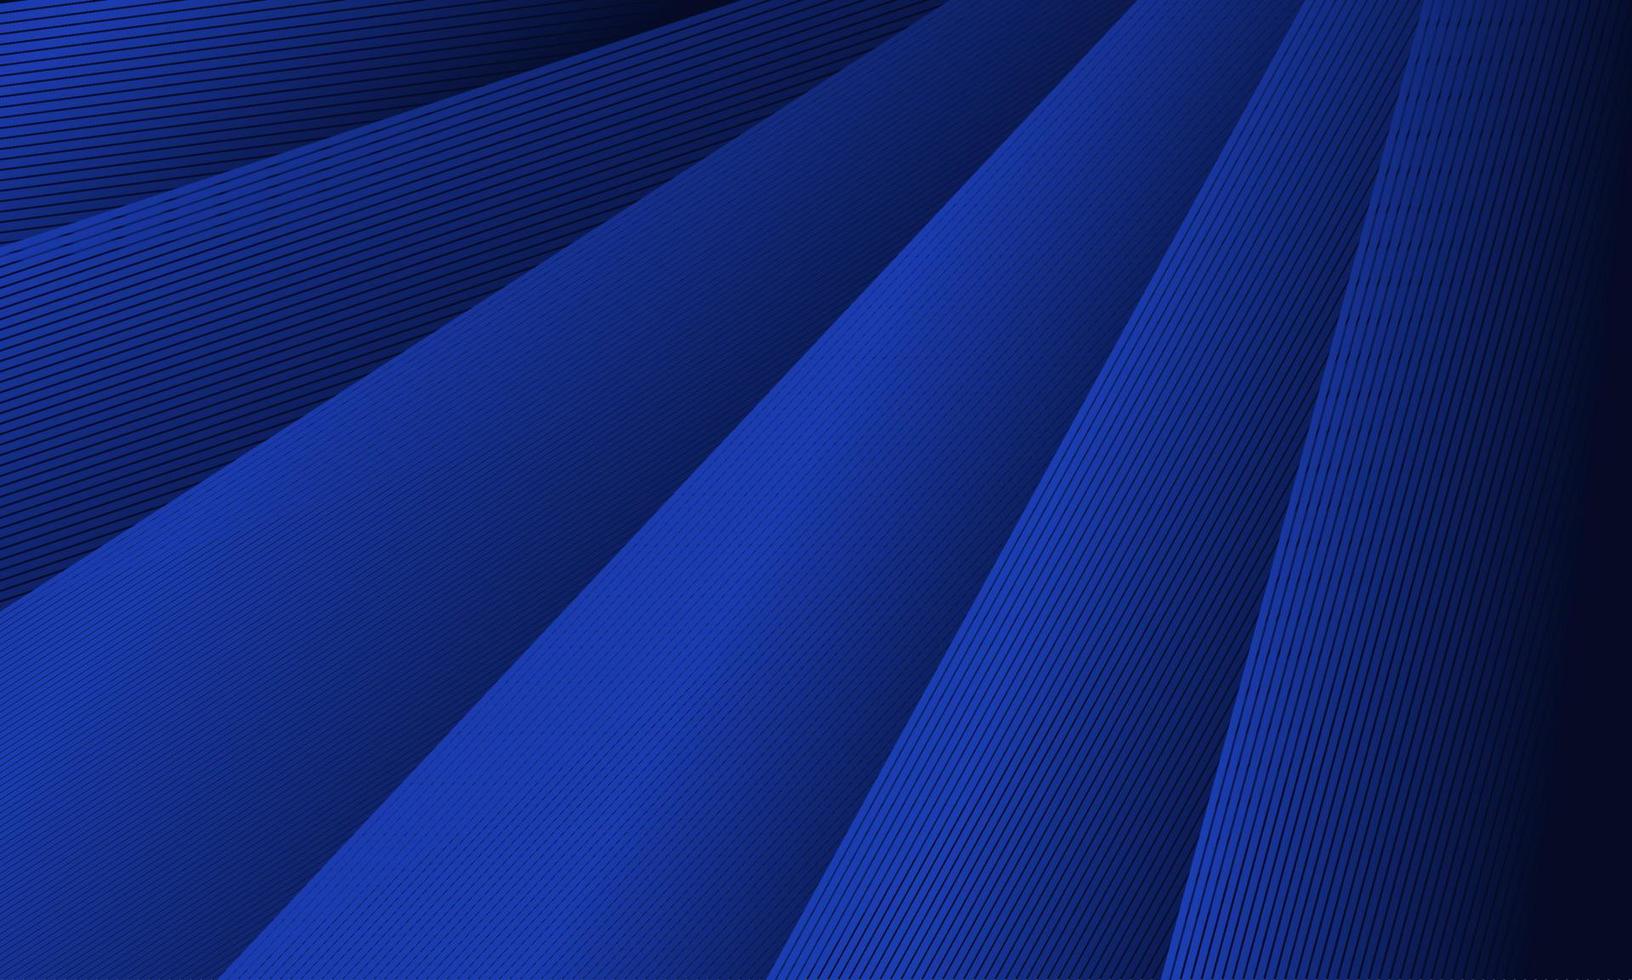 fond abstrait moderne avec des rayures diagonales dégradées bleues qui se chevauchent. arrière-plan vectoriel pour la présentation, l'affiche, la bannière, le web, la promotion ou l'entreprise